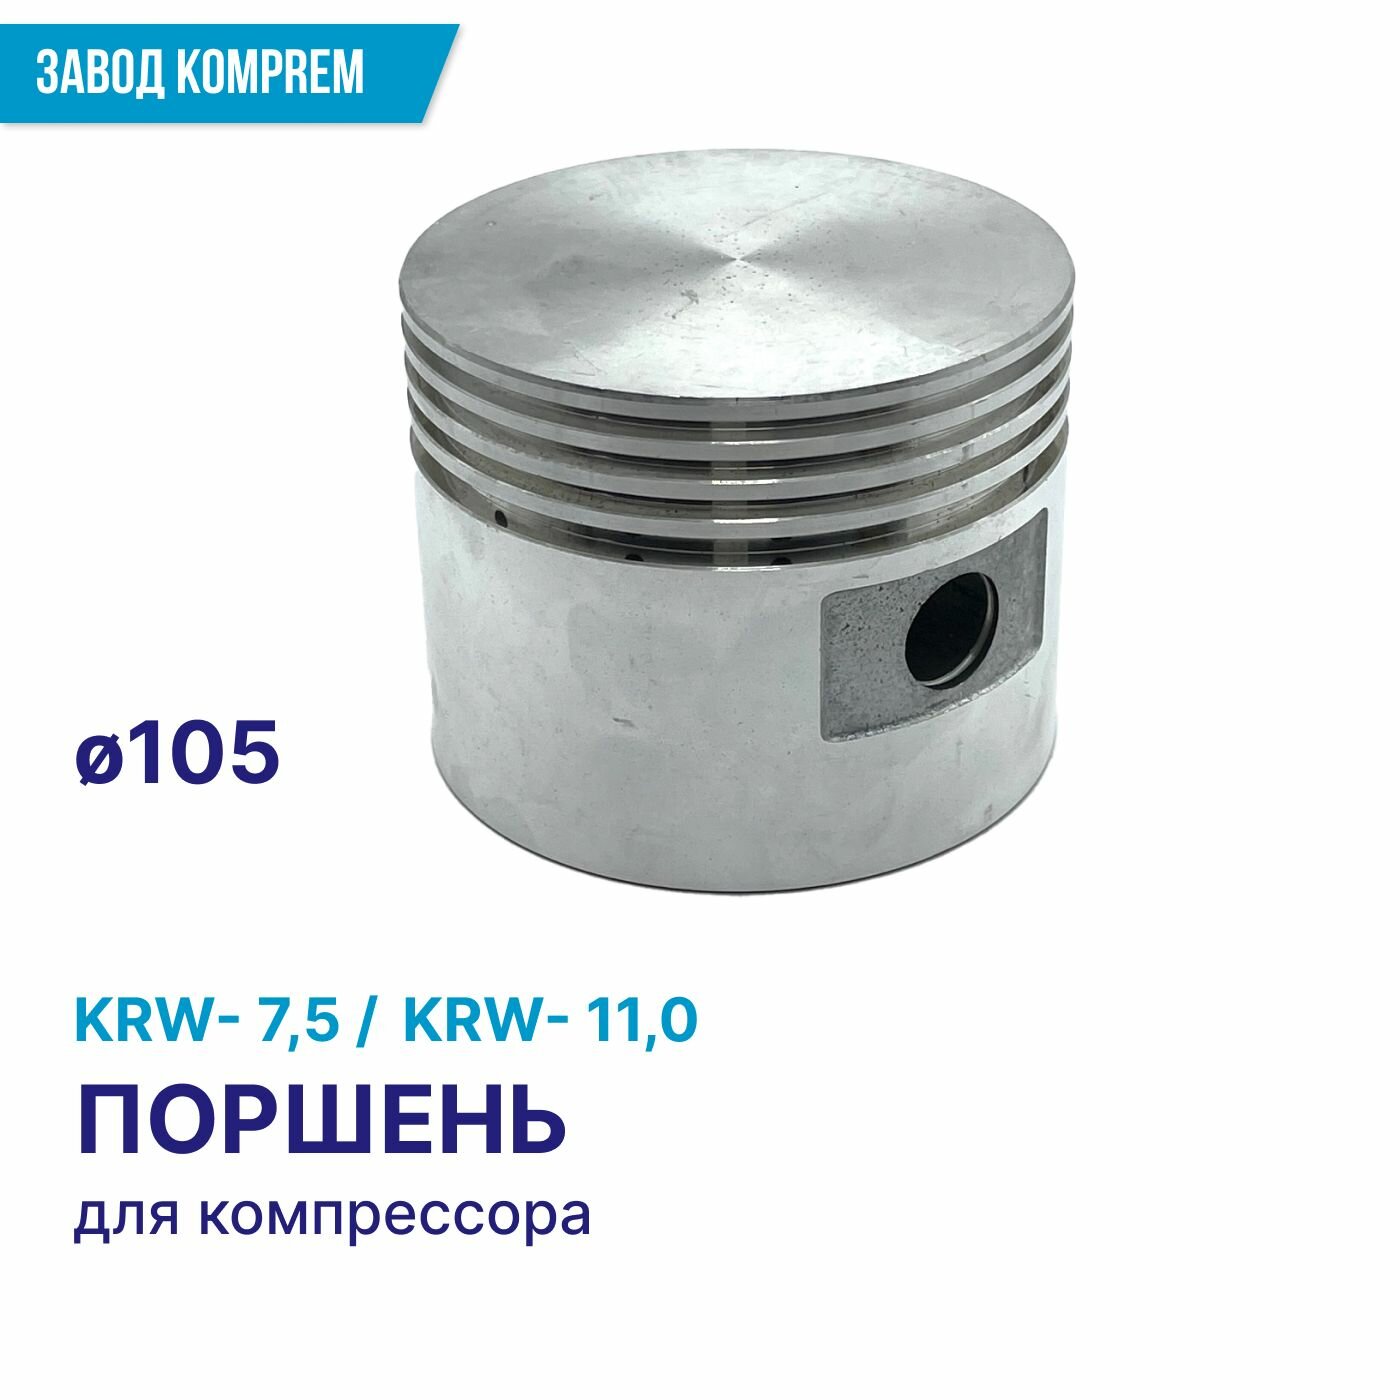 Поршень D105 для компрессора KRW-75 KRW-110 Komprem диаметр 105 алюминий